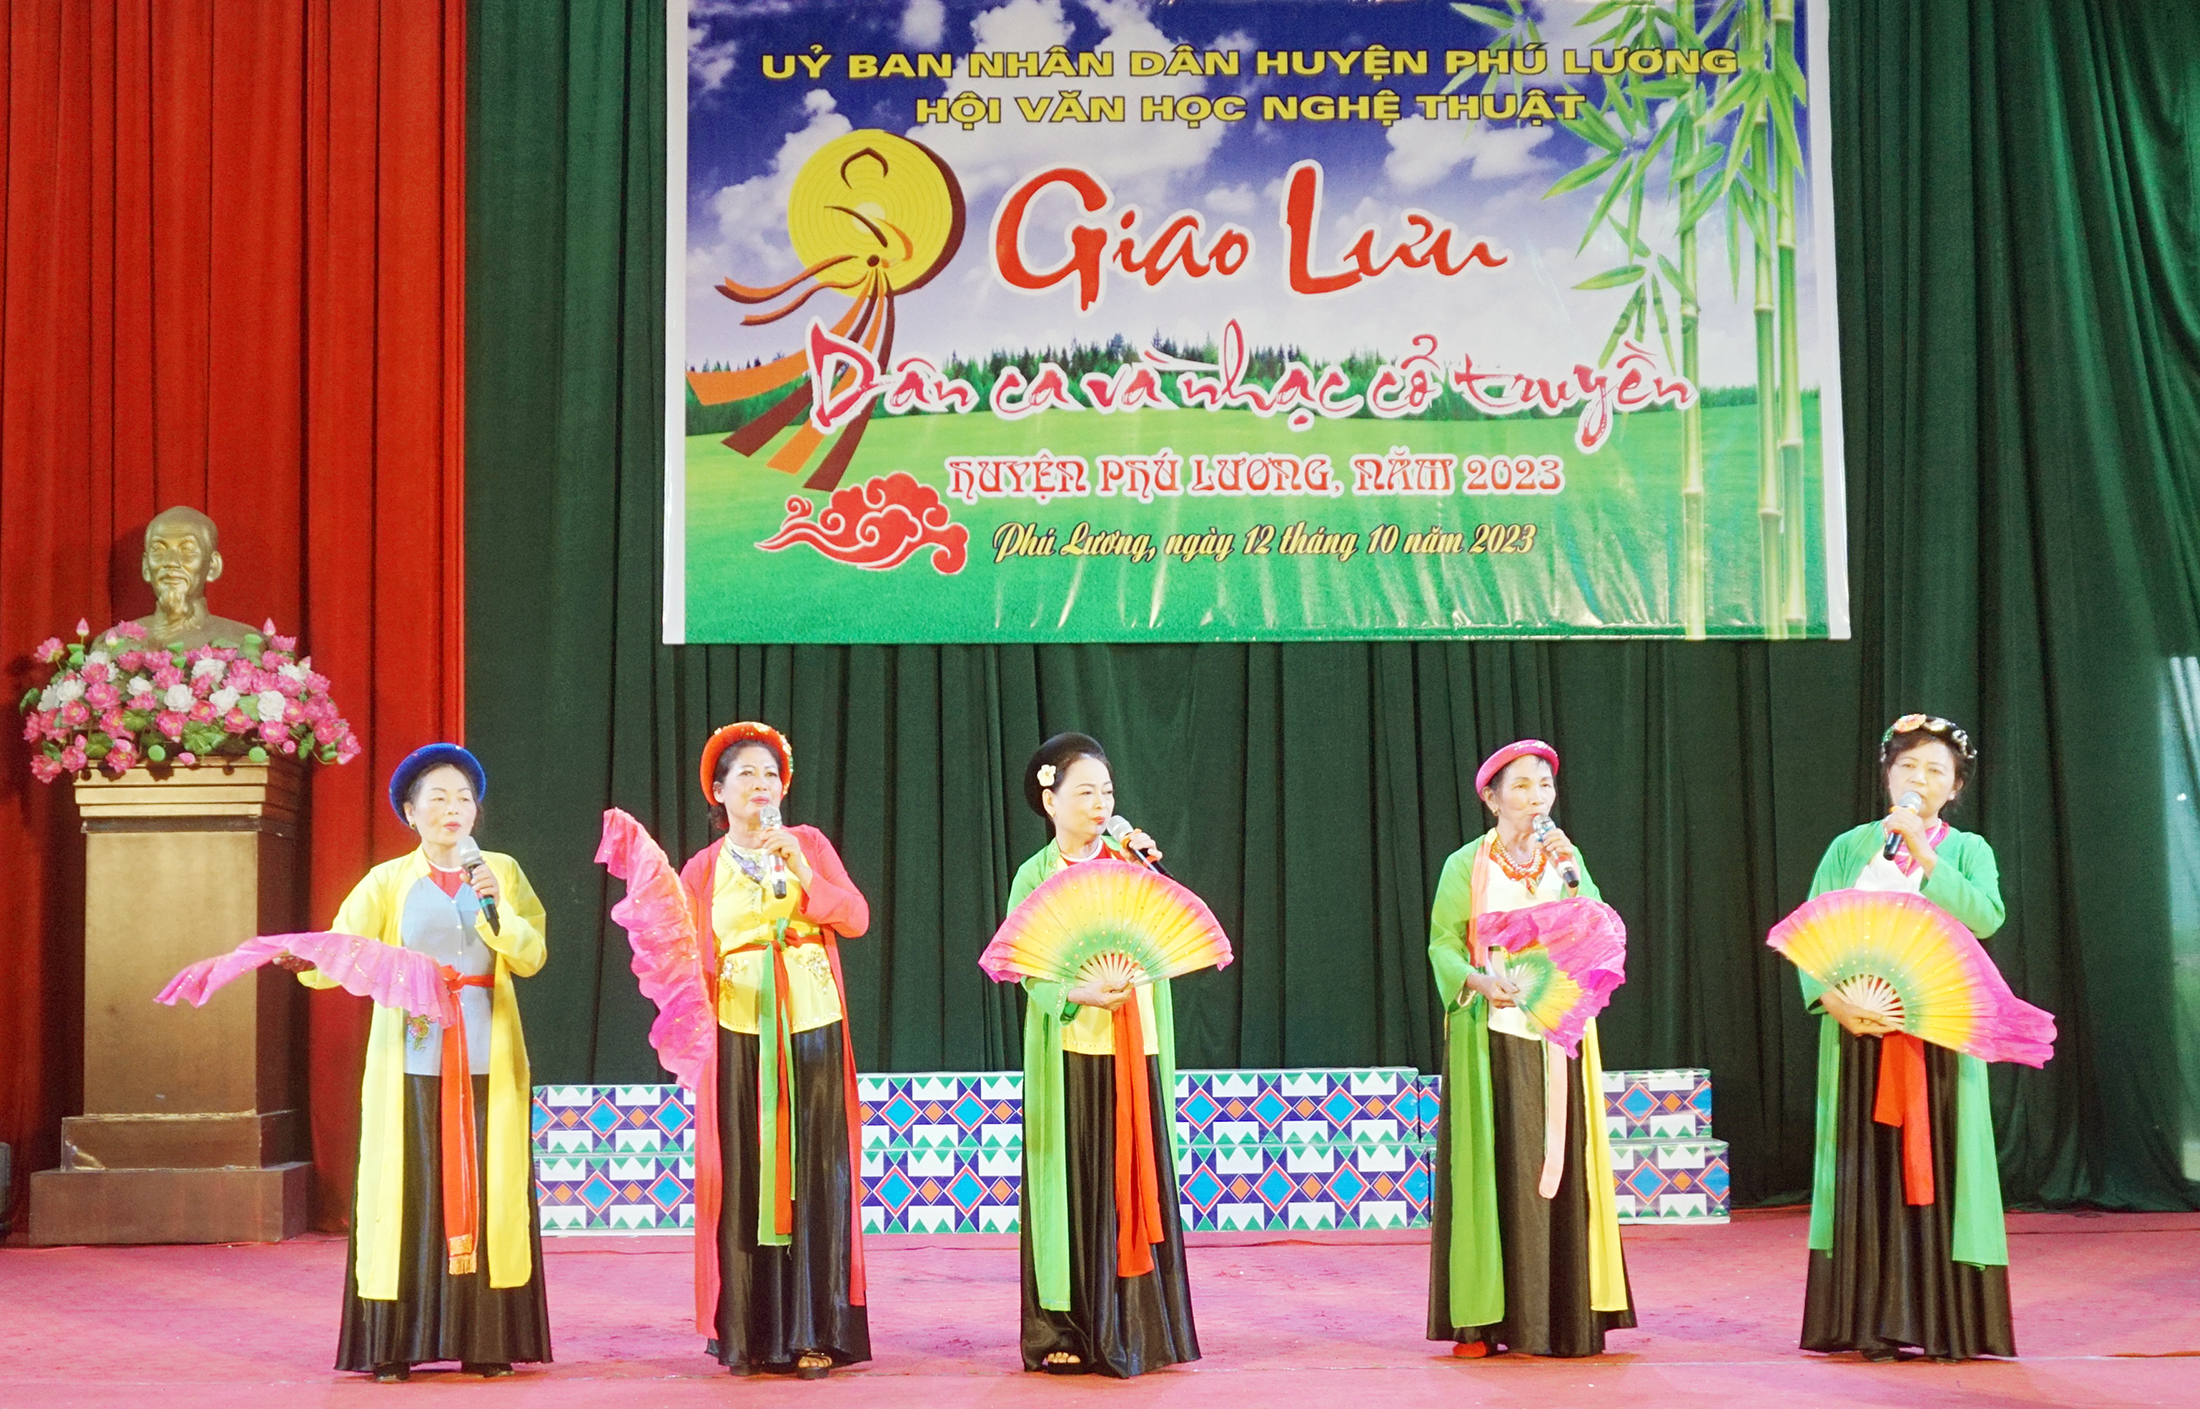 Sôi nổi Giao lưu “dân ca và nhạc cổ truyền” huyện Phú Lương